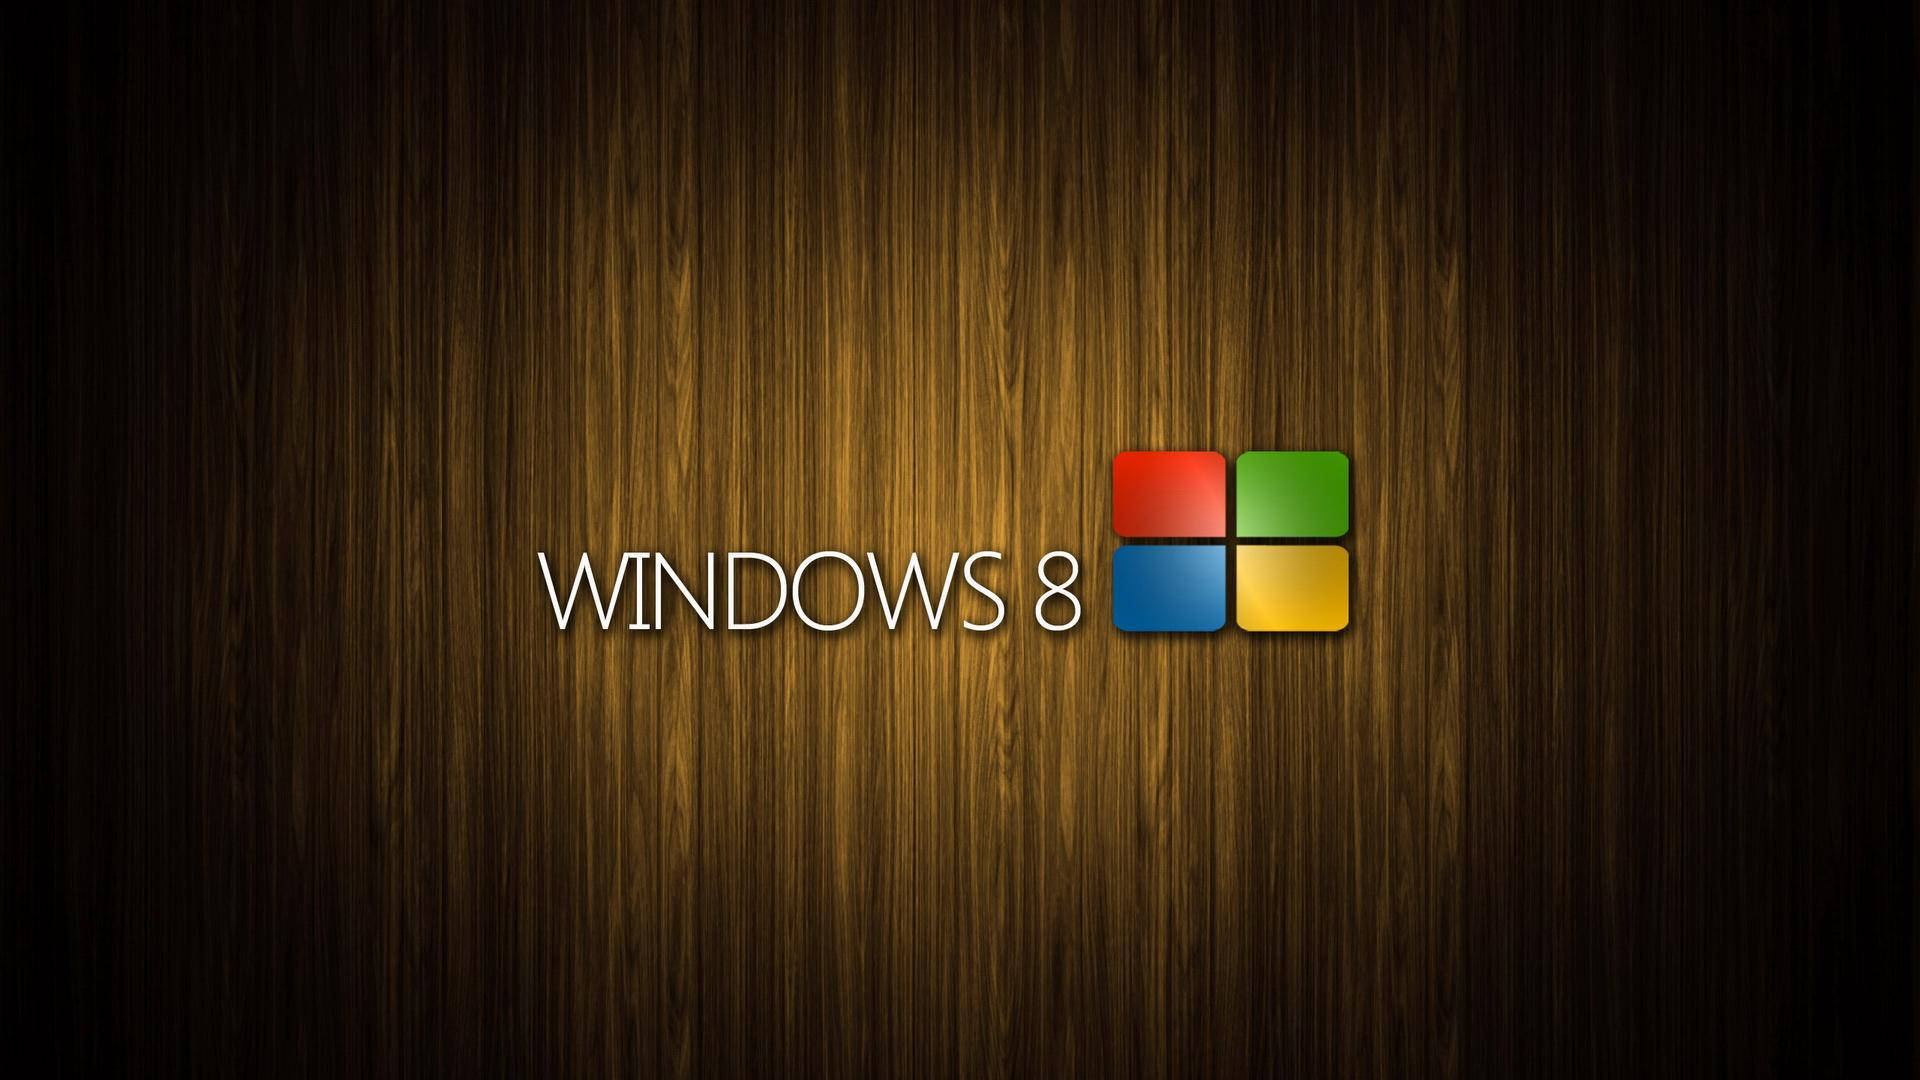 Fondode Pantalla De Windows 8 Con Estilo De Ventanas De Madera En Viñeta. Fondo de pantalla